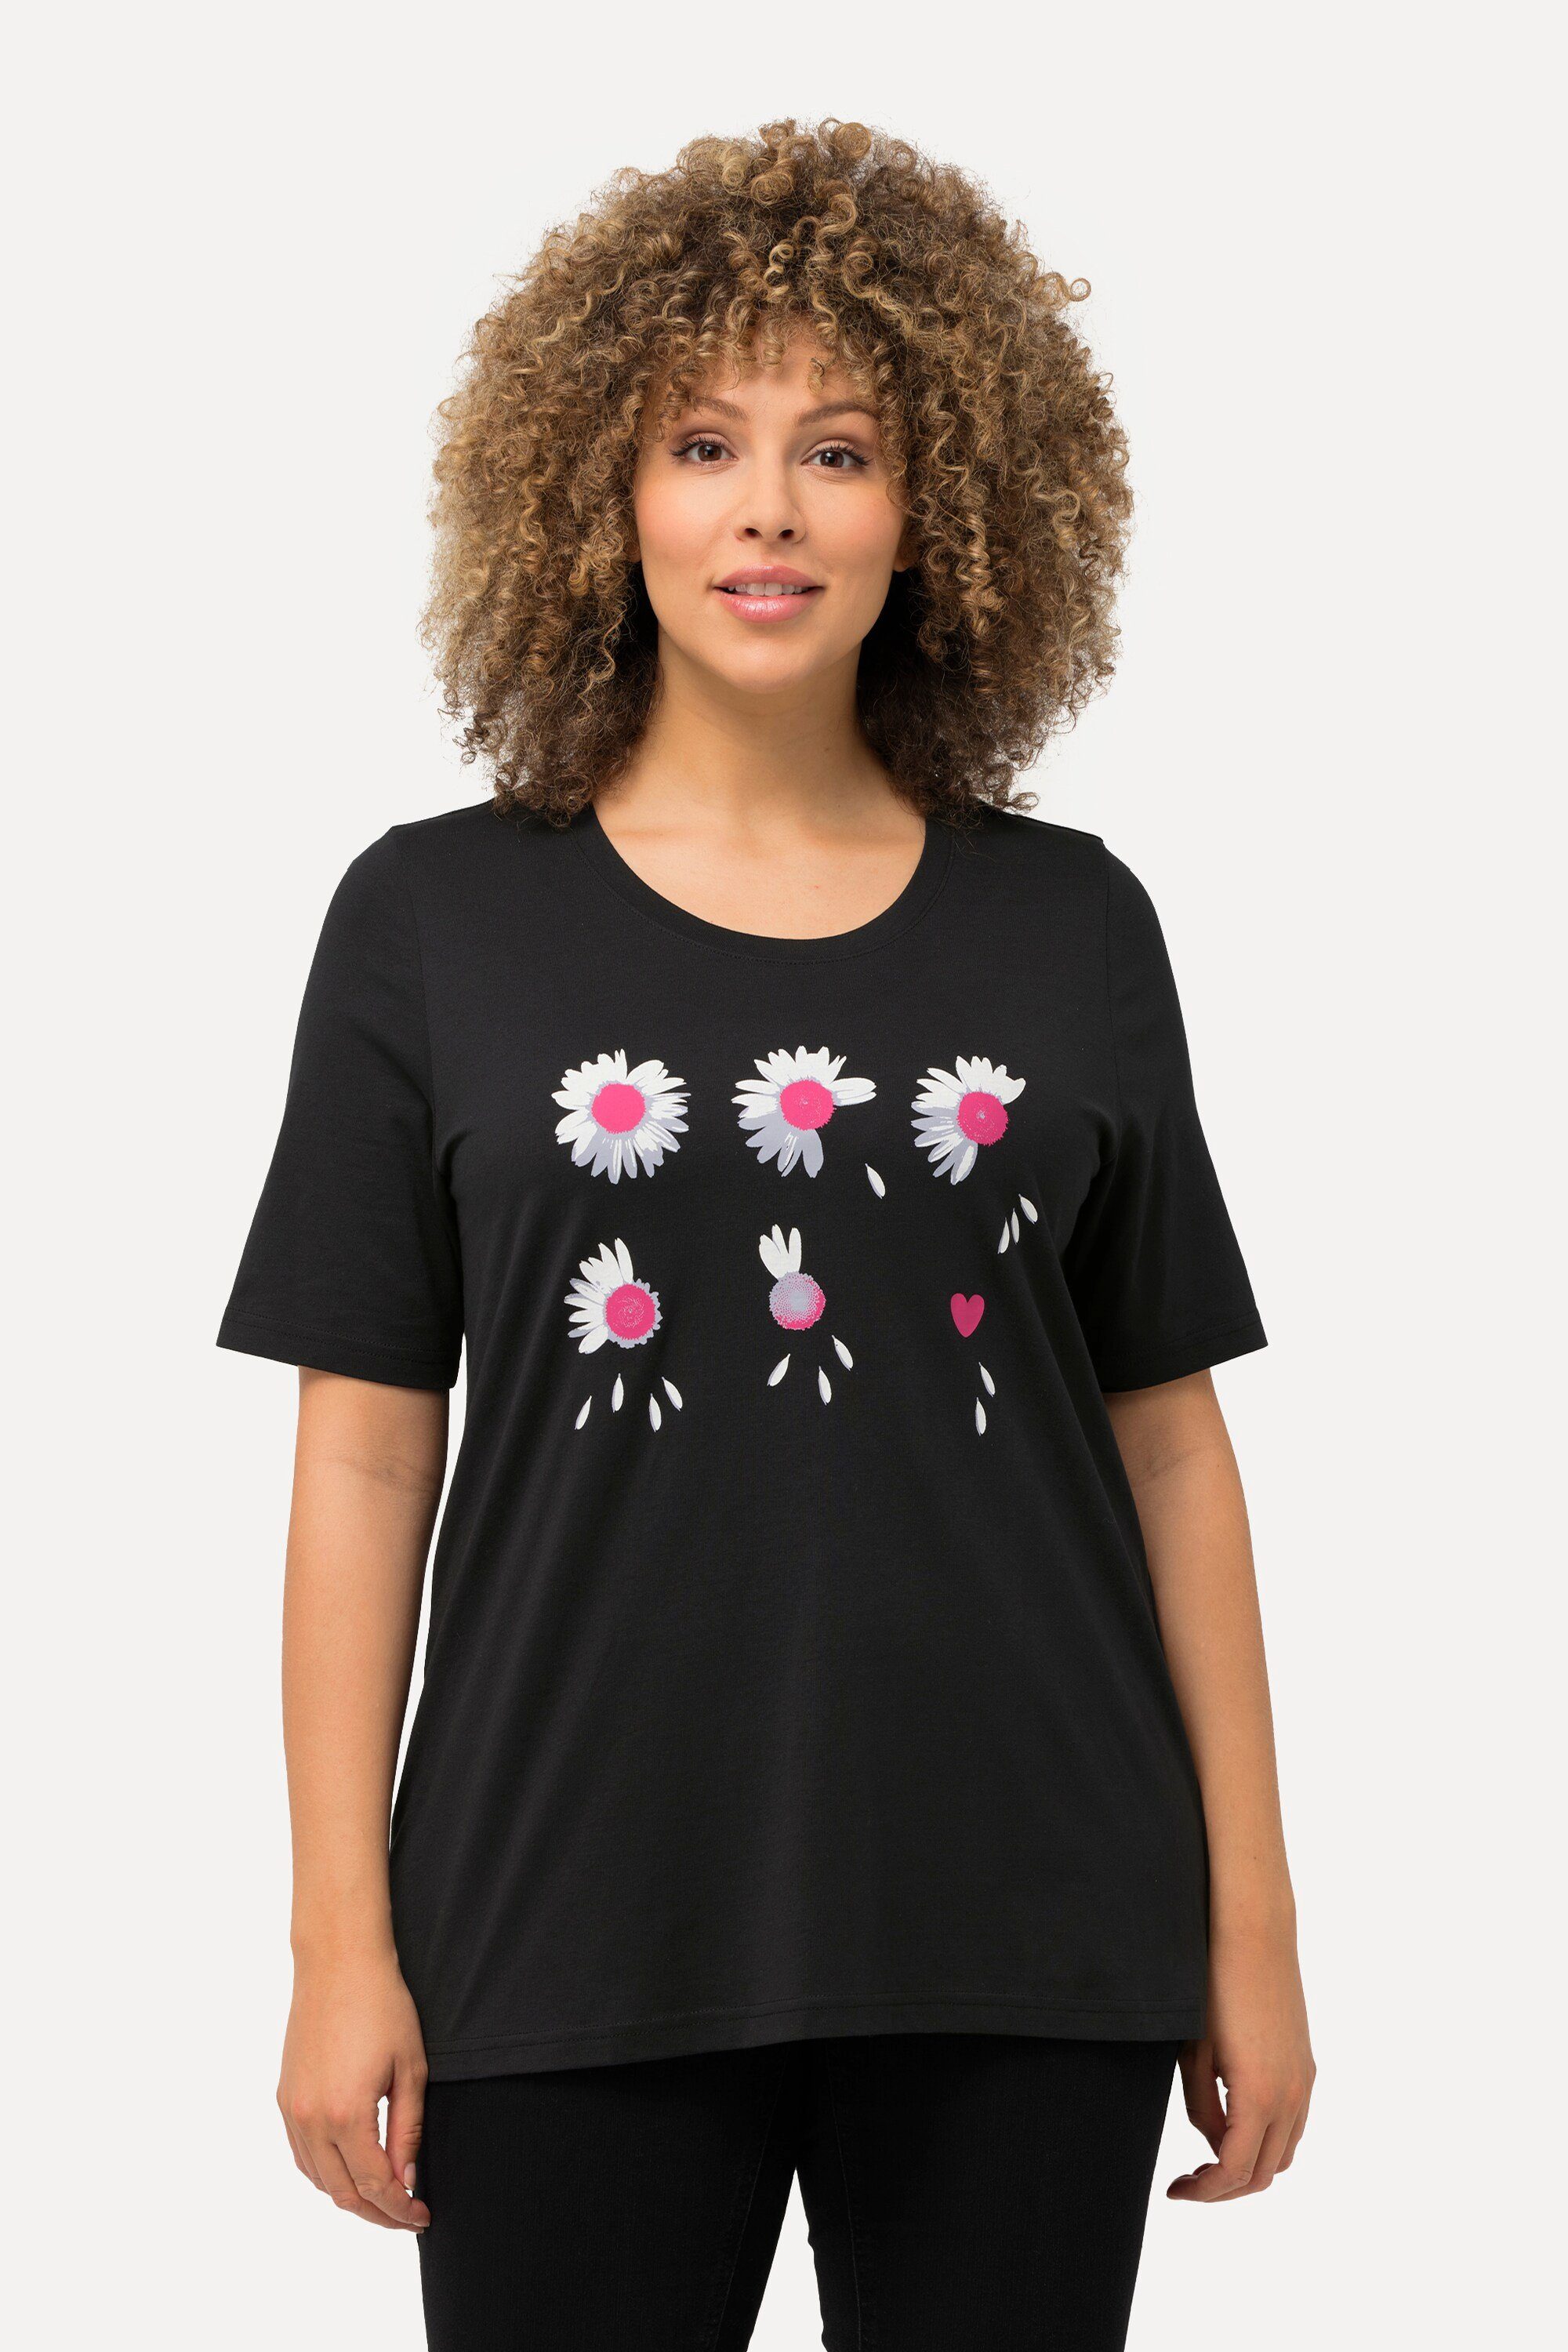 Popken schwarz Blüten T-Shirt Classic Ulla Halbarm Rundhalsshirt Runhals